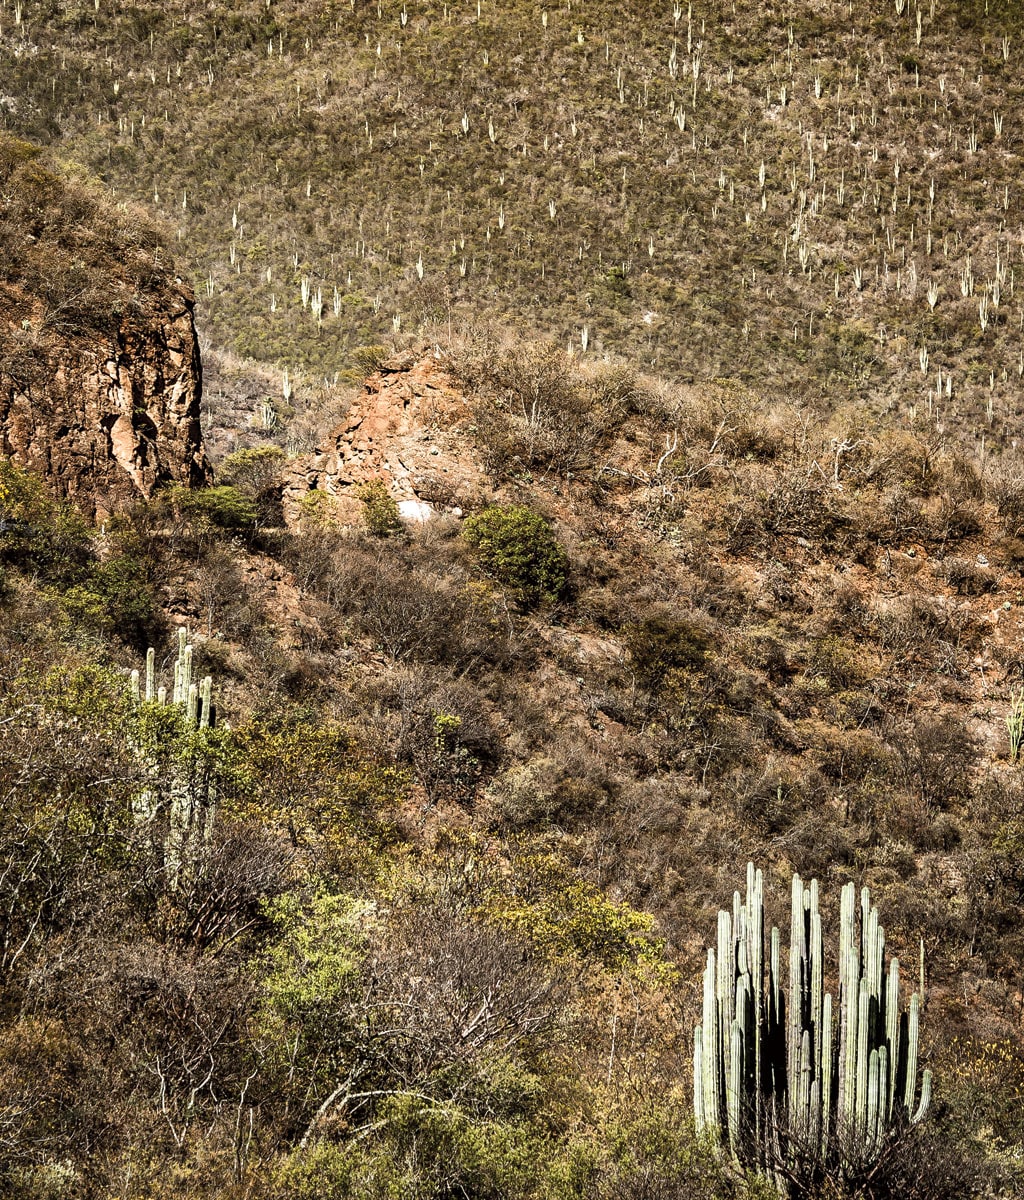 South central Mexico’s Tehuacán-Cuicatlán Valley photo